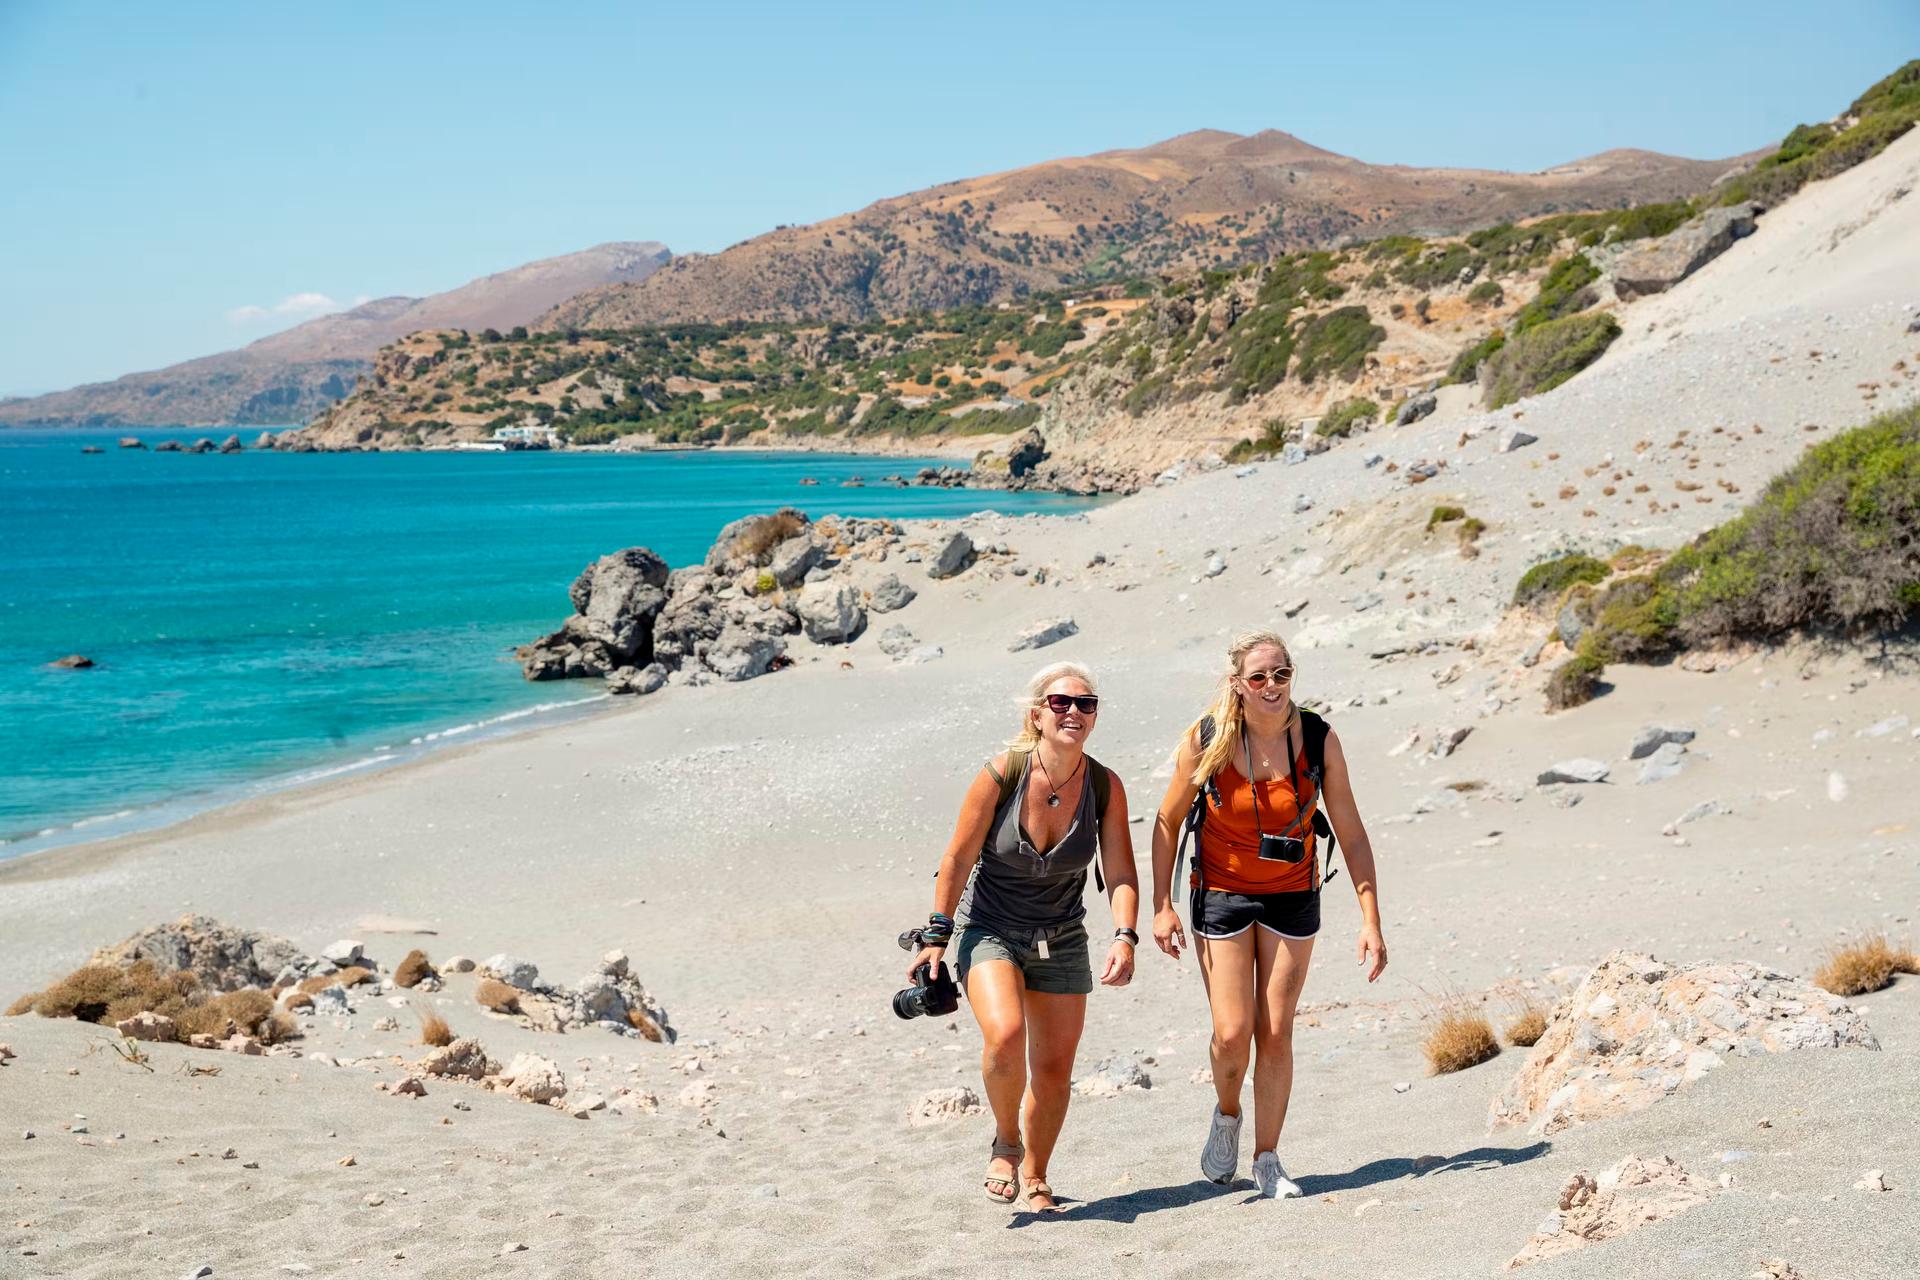 Två blonda kvinnor går på stranden på Kreta.  De ser glada och sorglösa ut i solen och håller kameror.